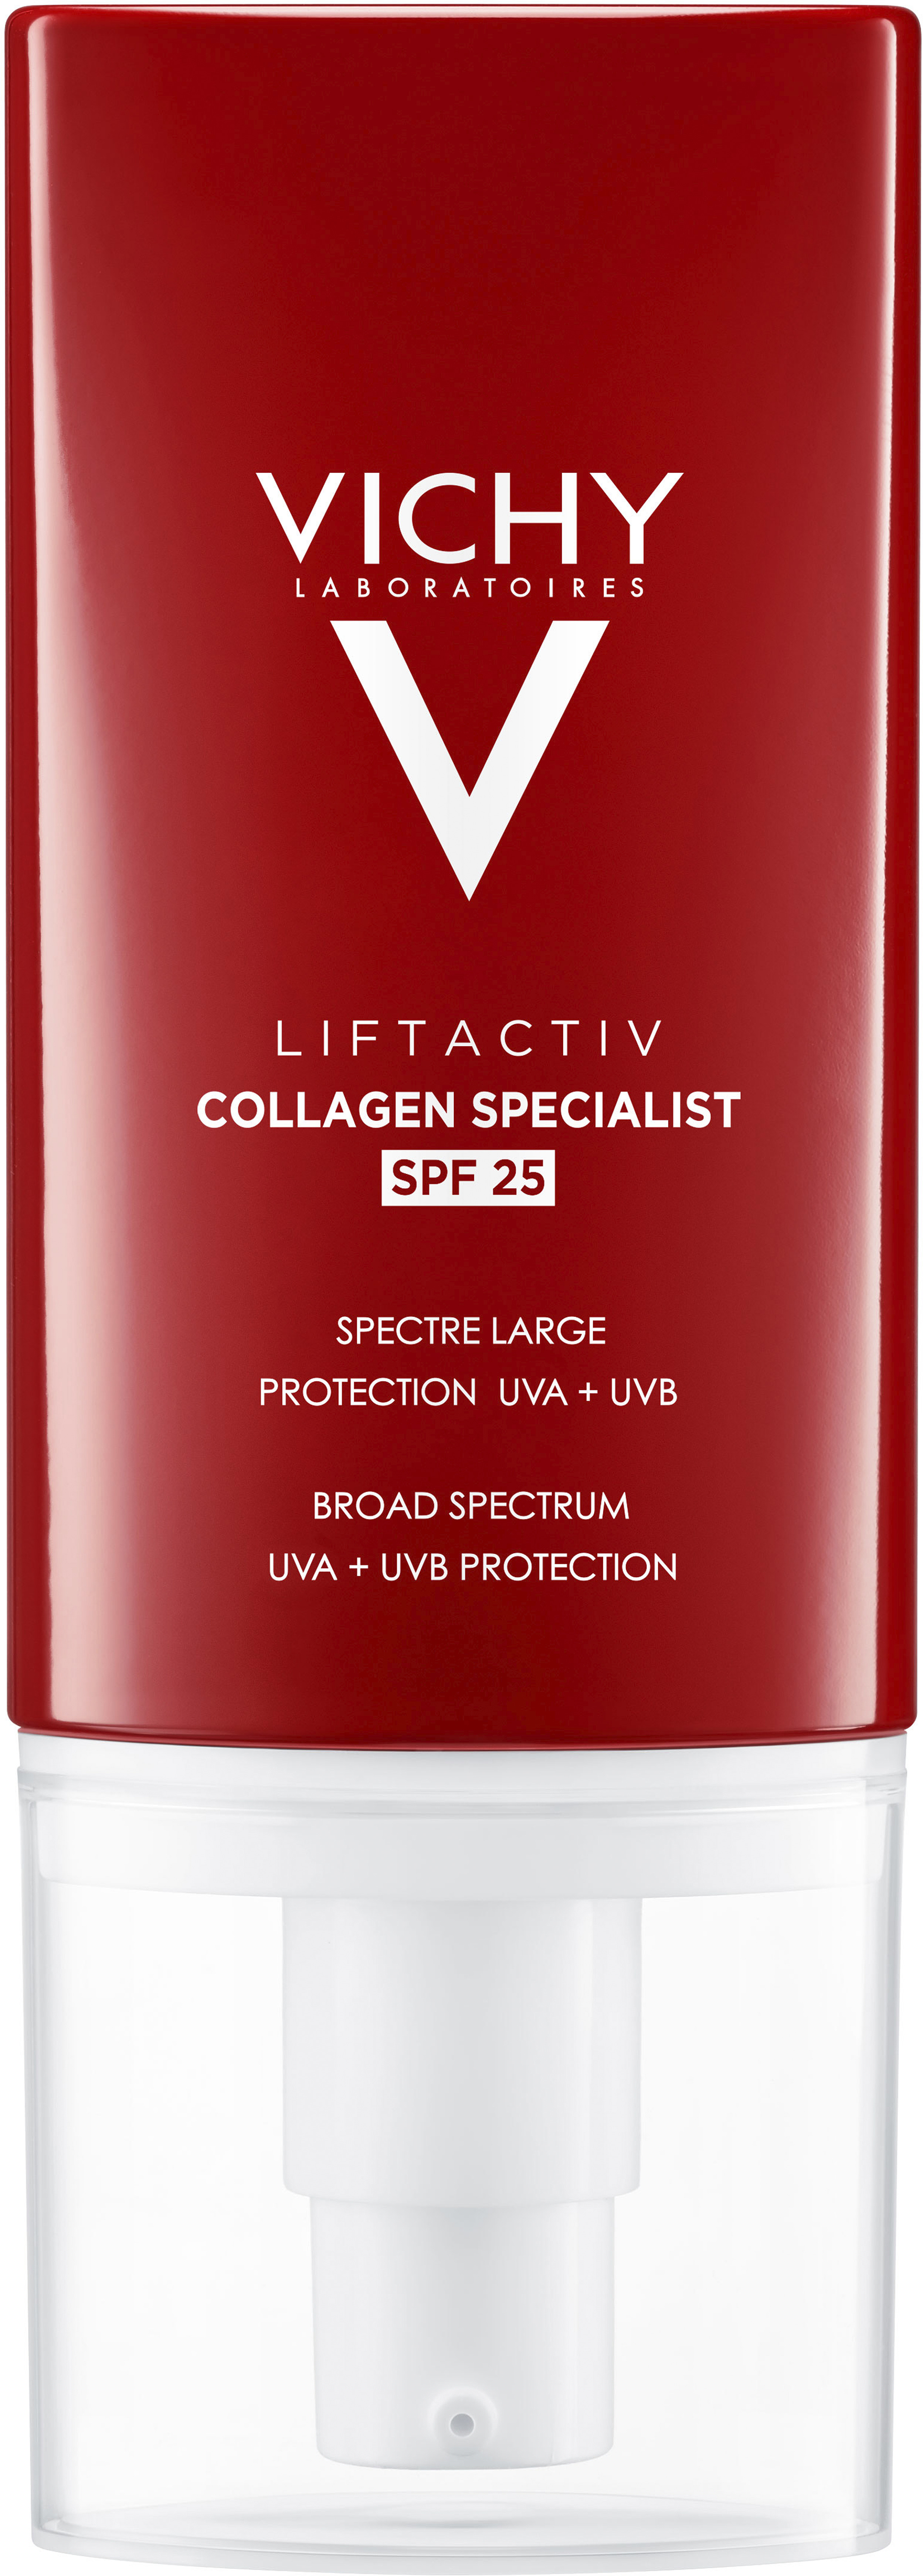 Vichy Liftavtive Collagen Specialist SPF25